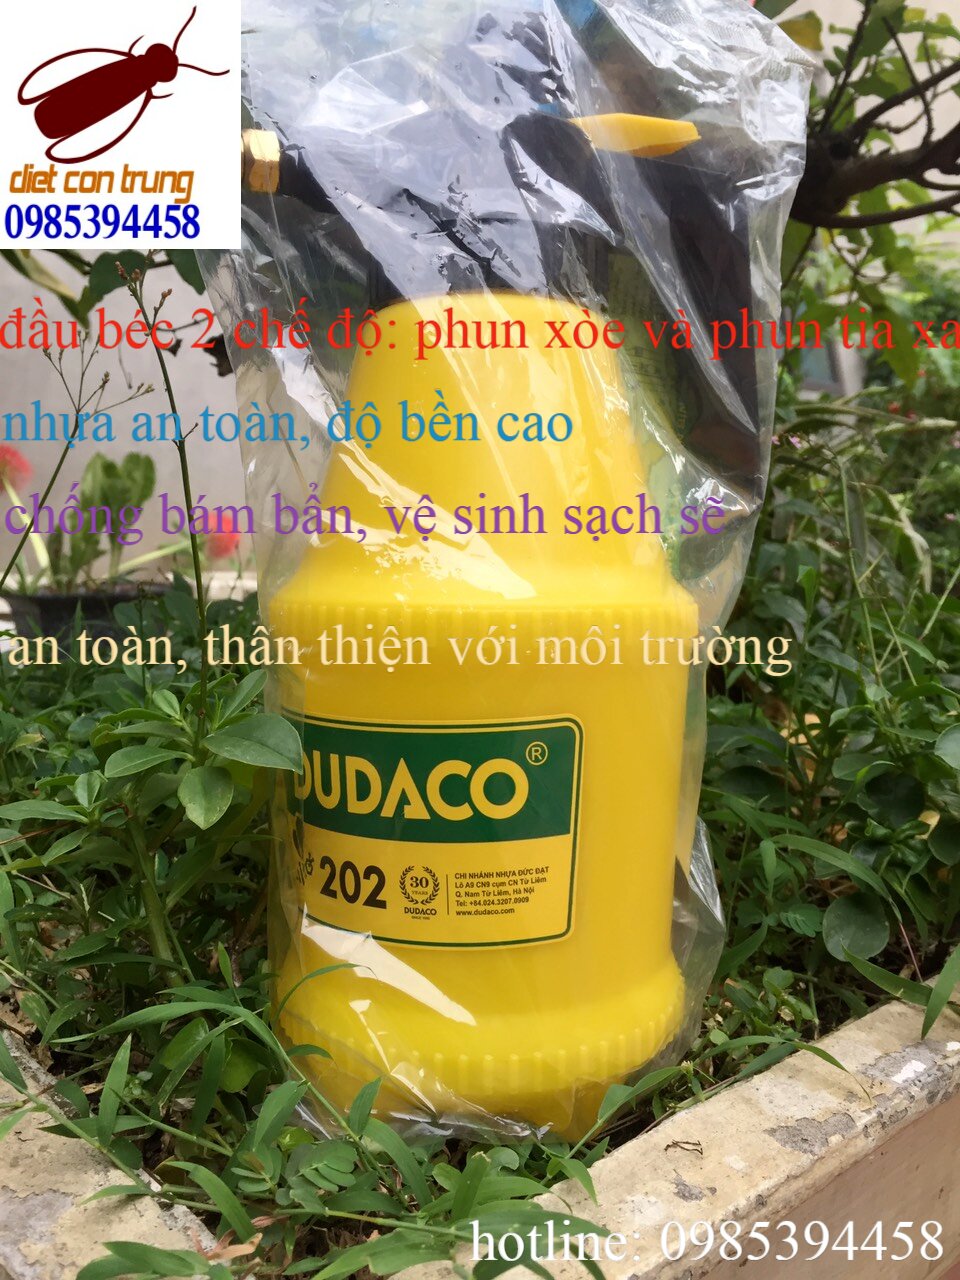 Bình tưới cây Dudaco 2L - Hàng Chính Hãng 100% - Nhựa Đức Đạt